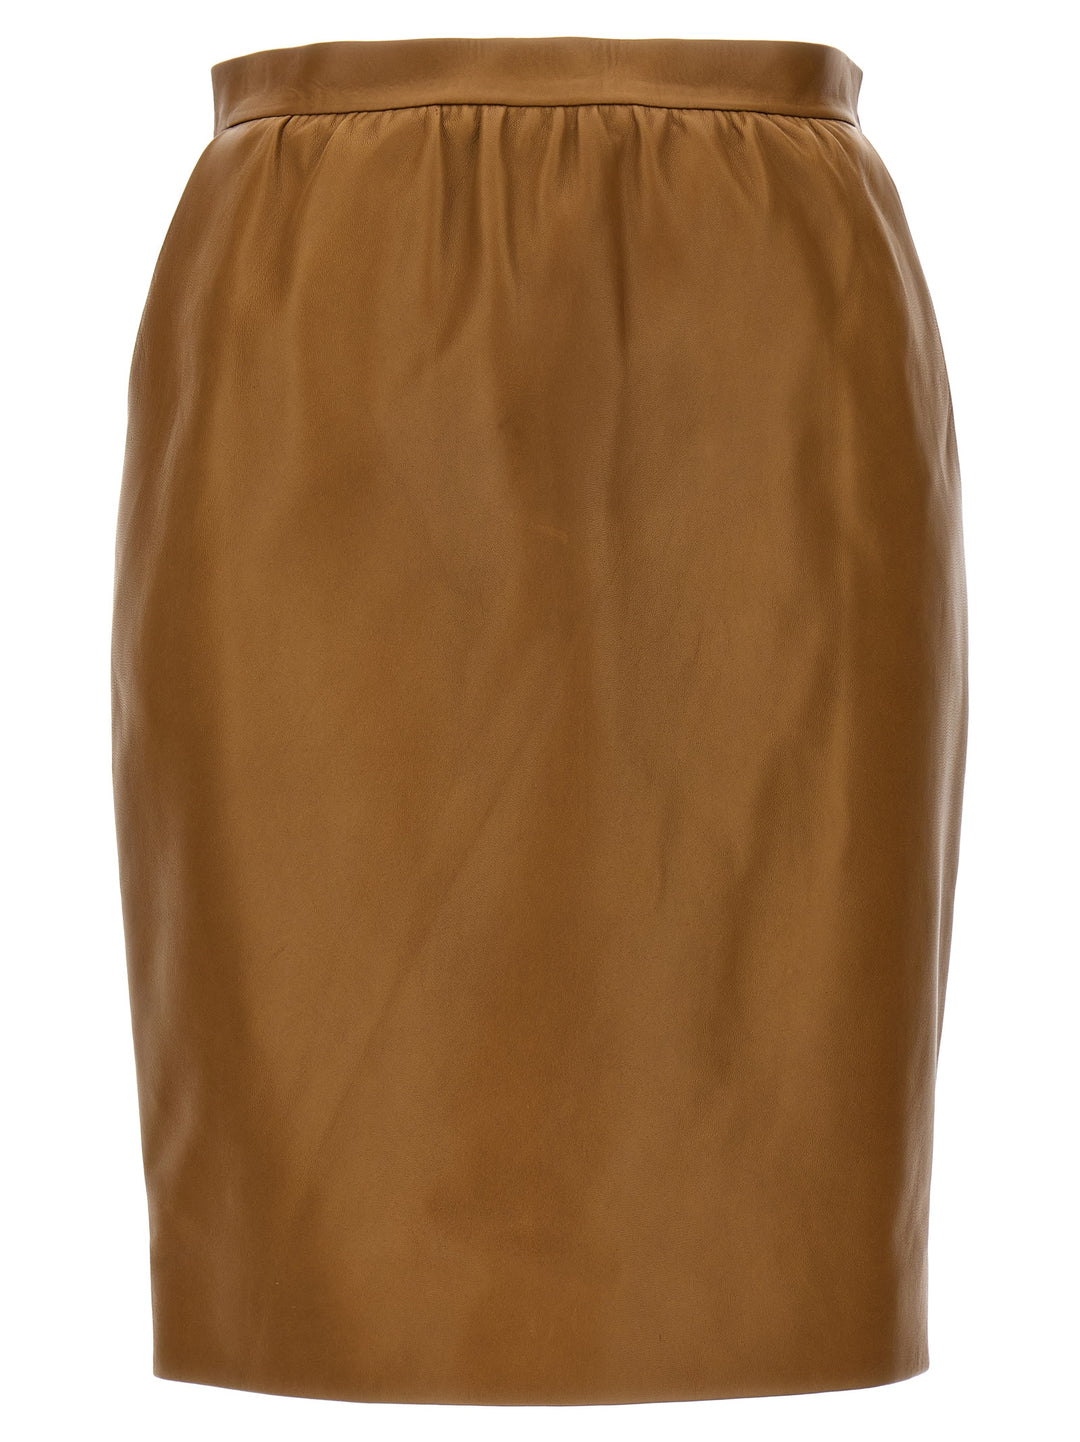 Leather Skirt Gonne Marrone